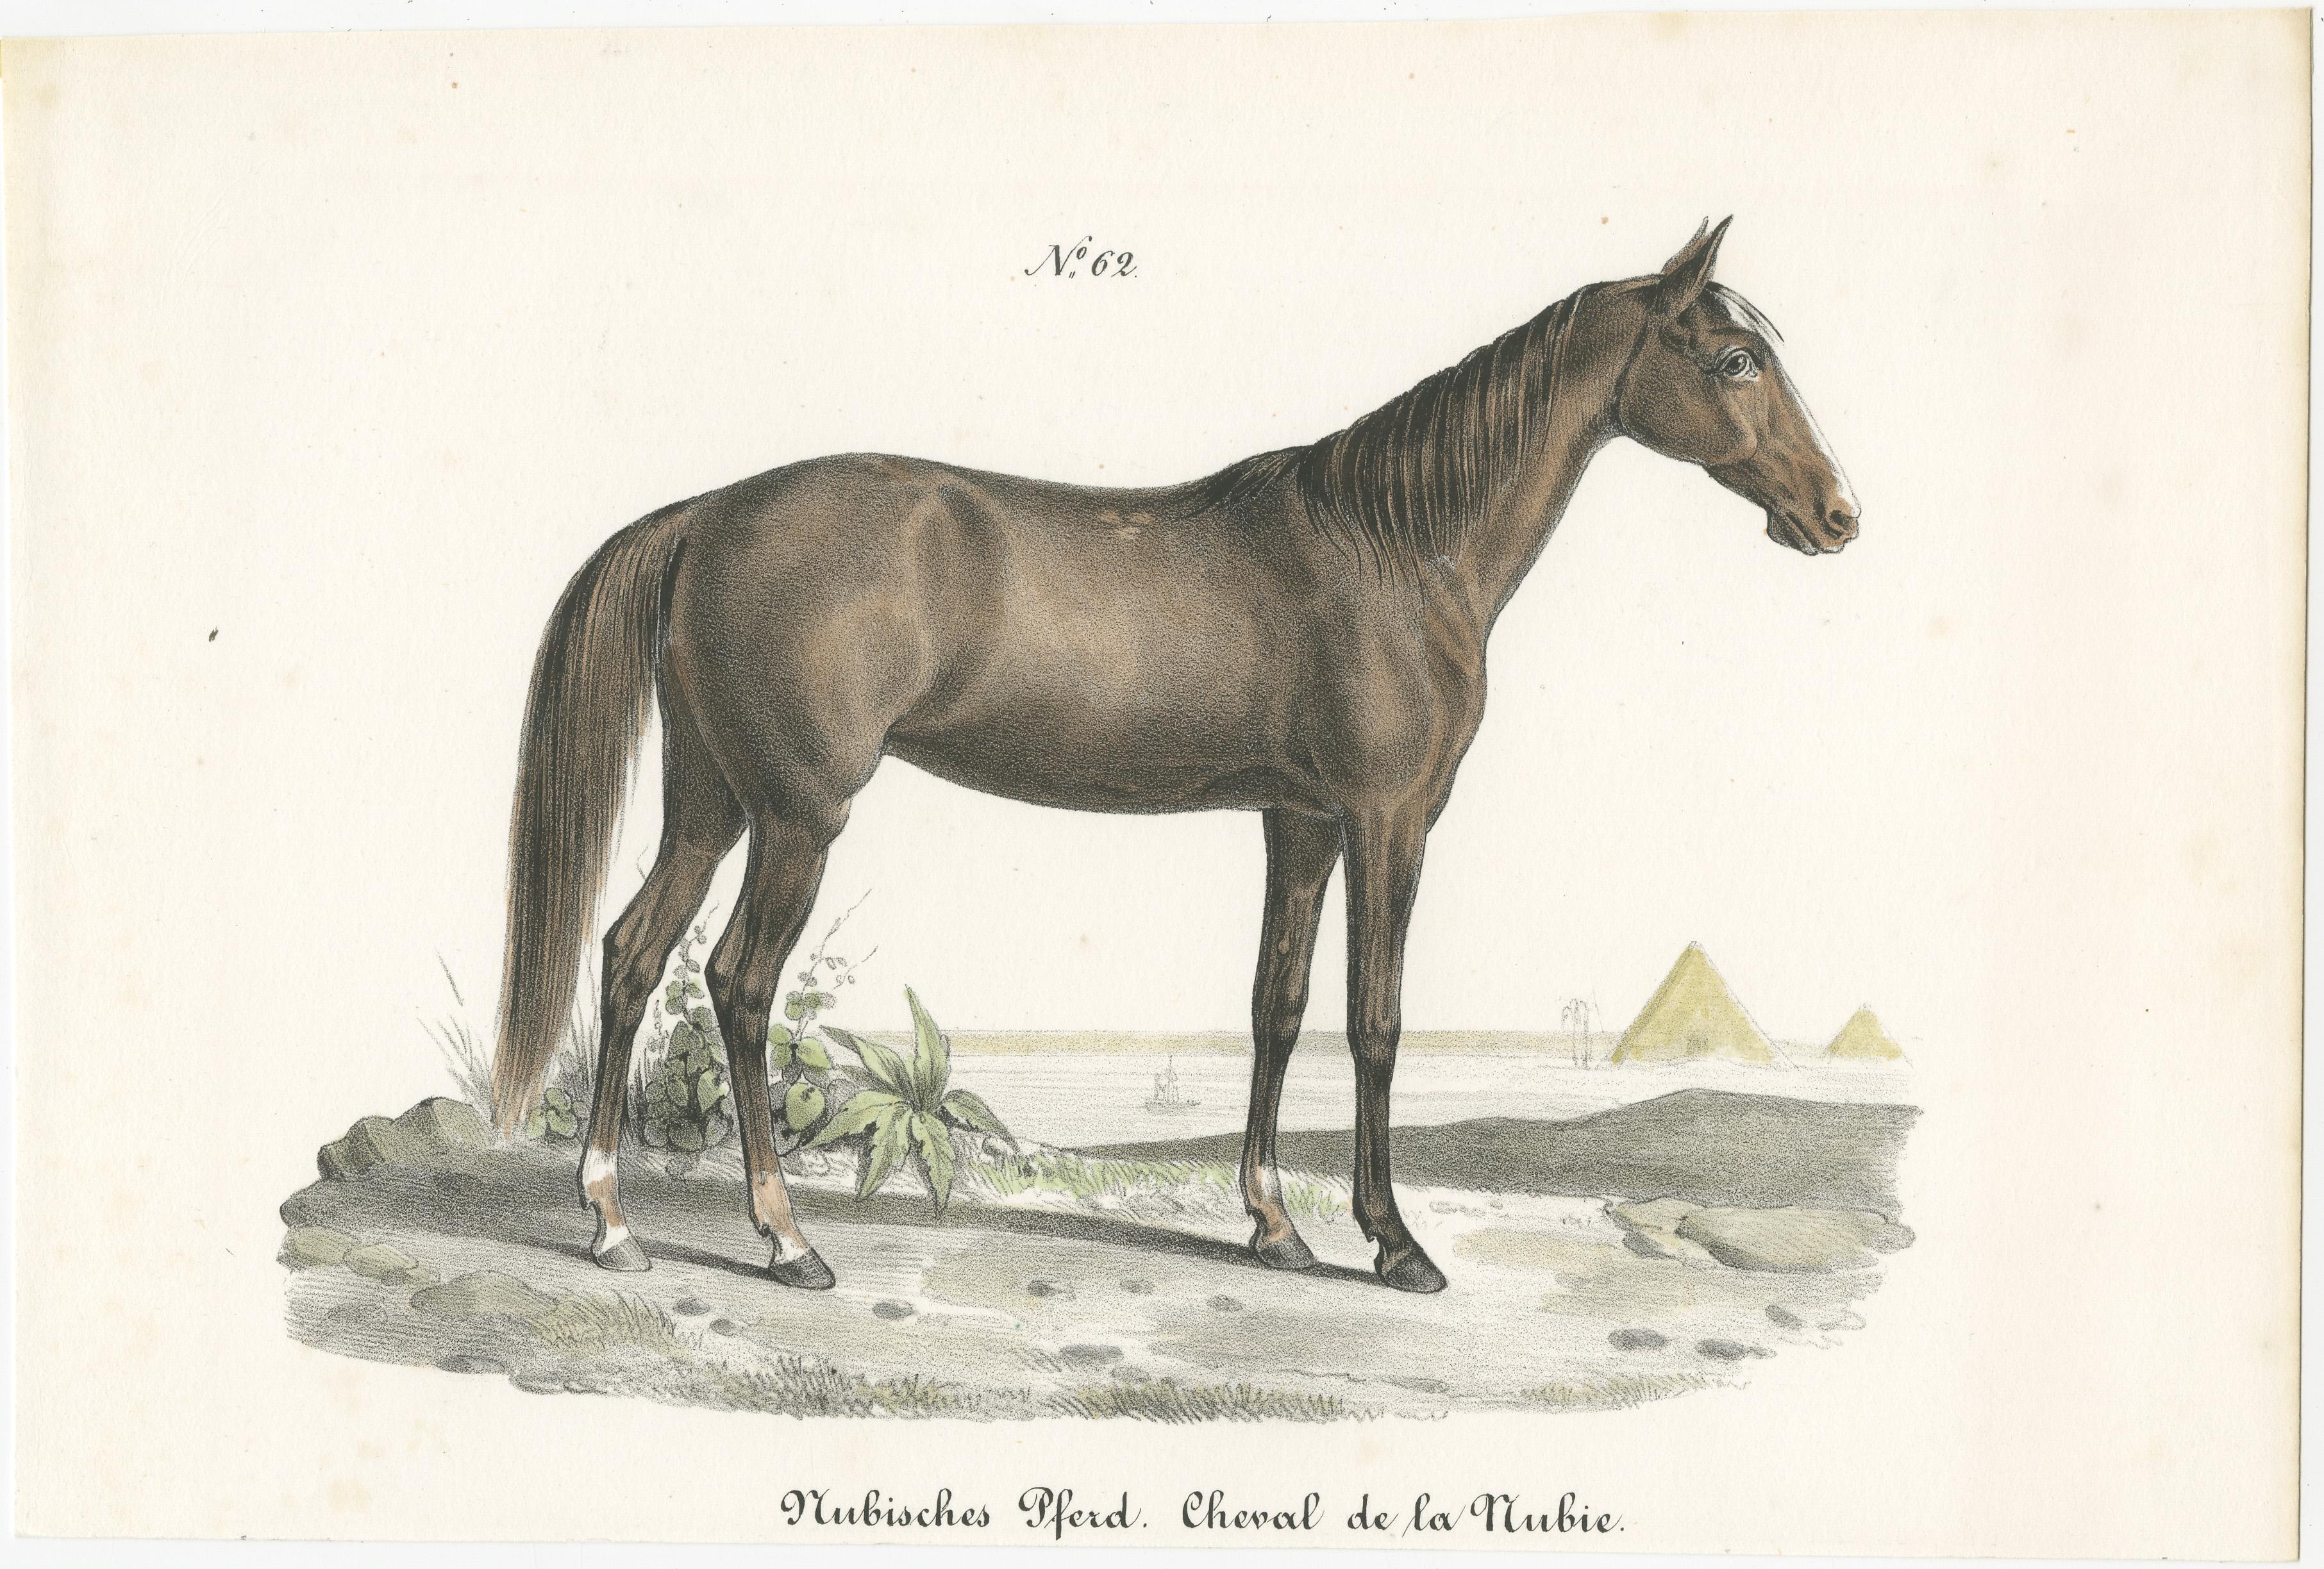 Antique print titled 'Nubisches Pferd. Cheval de la Nubie'. Old horse print of a Nubian horse. This print originates from 'Naturgeschichte Abbildungen der Sæugethiere' by Heinrich R. Schinz. Published 1827. This work on mammals was part of a series